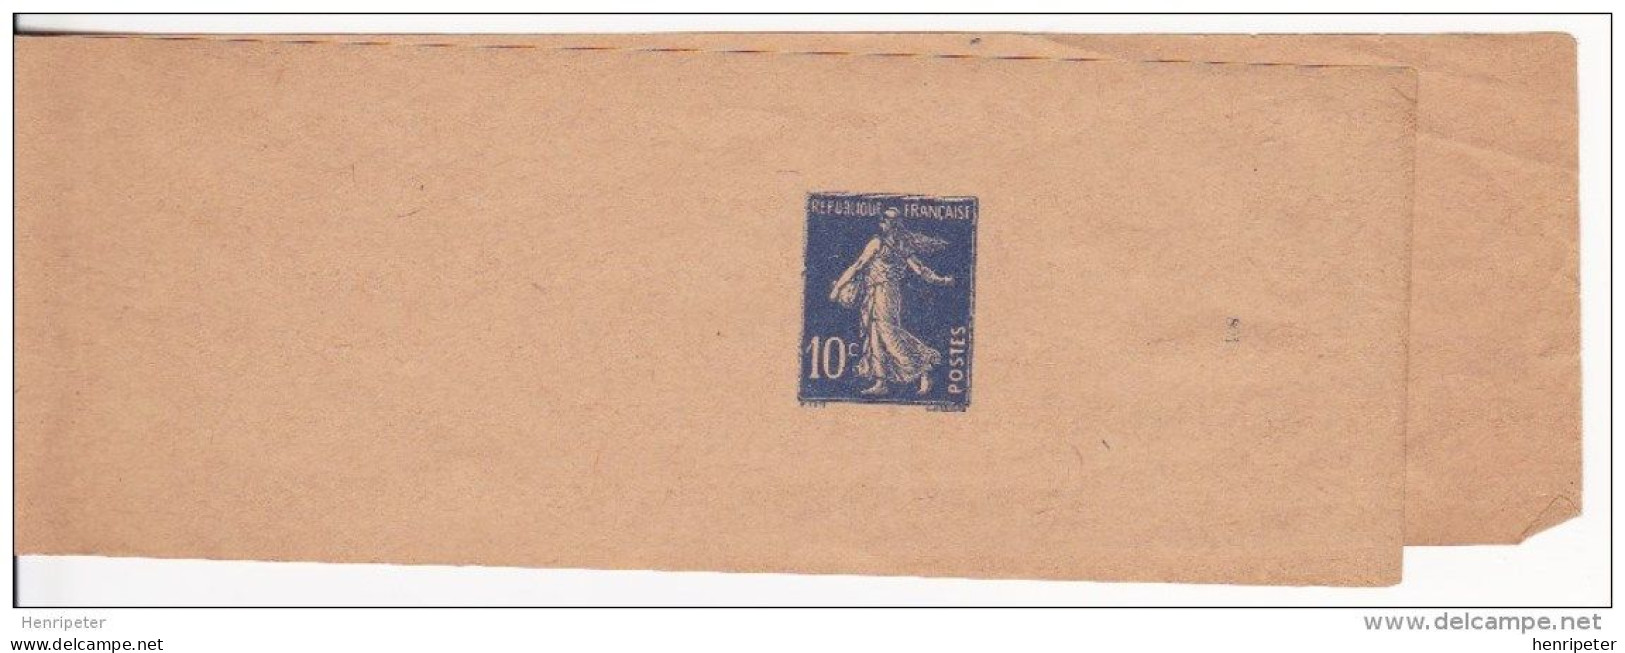 279-BJ1 (Yvert) Neuf** Sur Bande Pour Journaux - Entier Postal Type Semeuse à Fond Plein - France 1932-37 - Bandes Pour Journaux